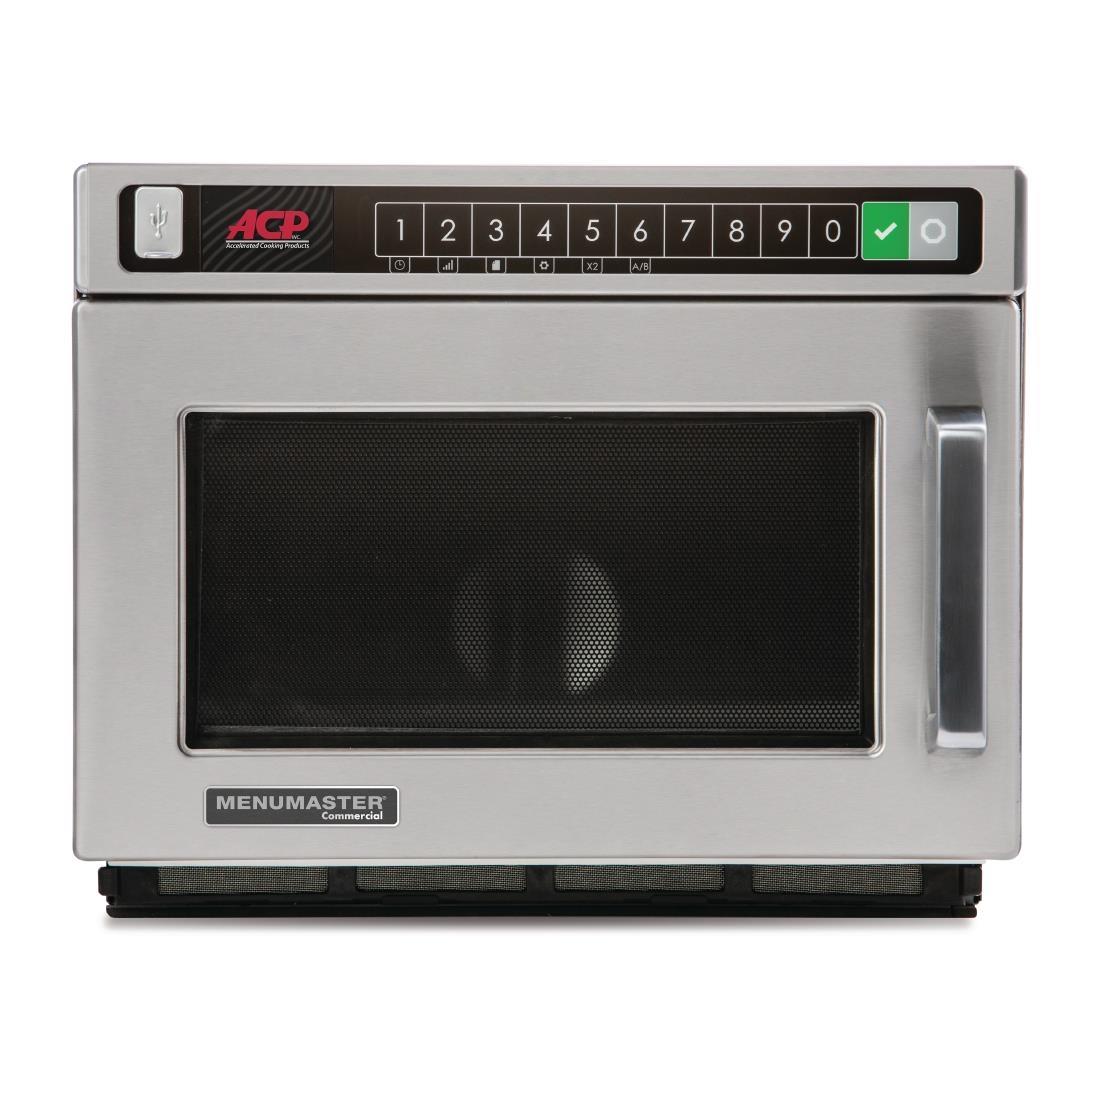 Menumaster Heavy Duty Programmable Microwave 17ltr 1400W DEC14E2 - CM736  - 2